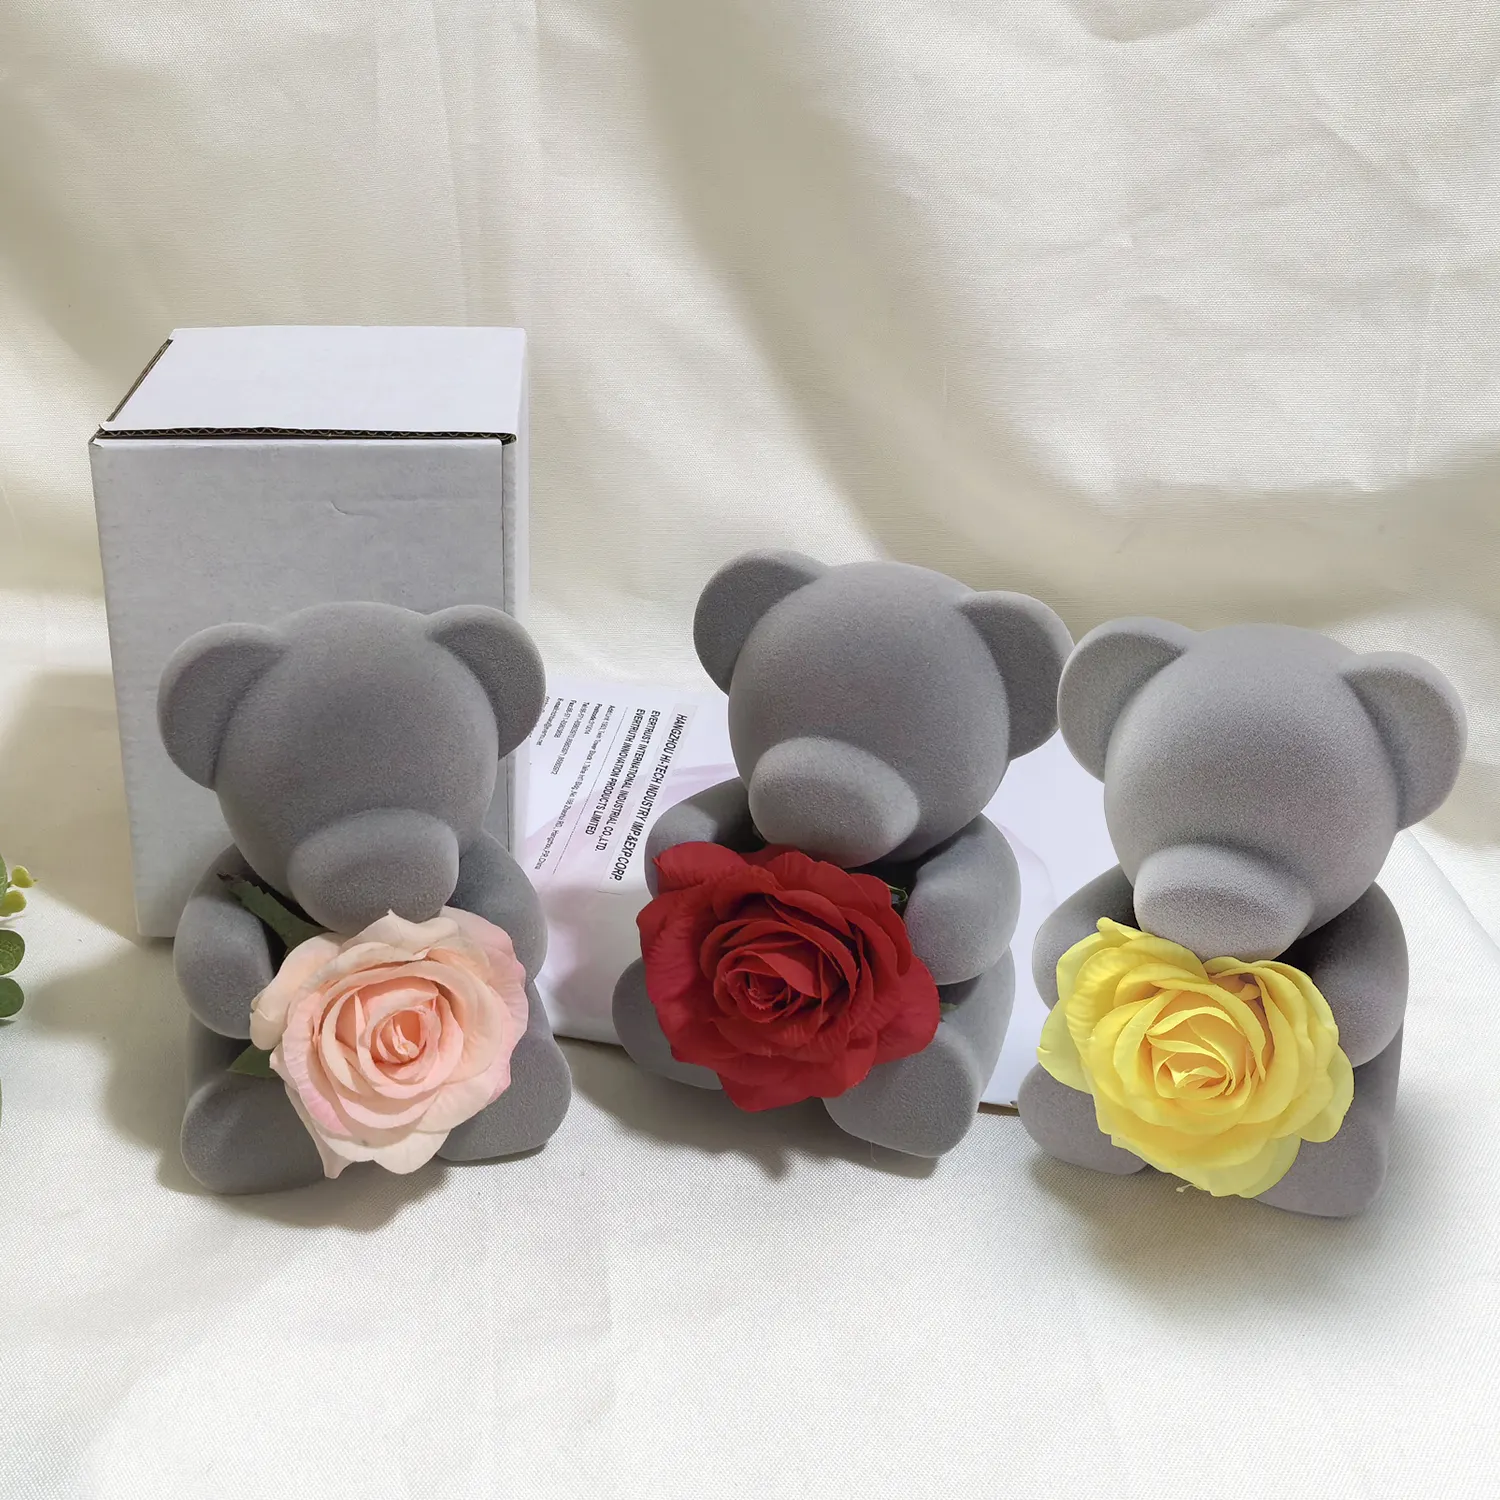 Regalo del Día de San Valentín flocado oso muñeca preservada jabón Artificial Rosa flor regalos para mujeres mamá